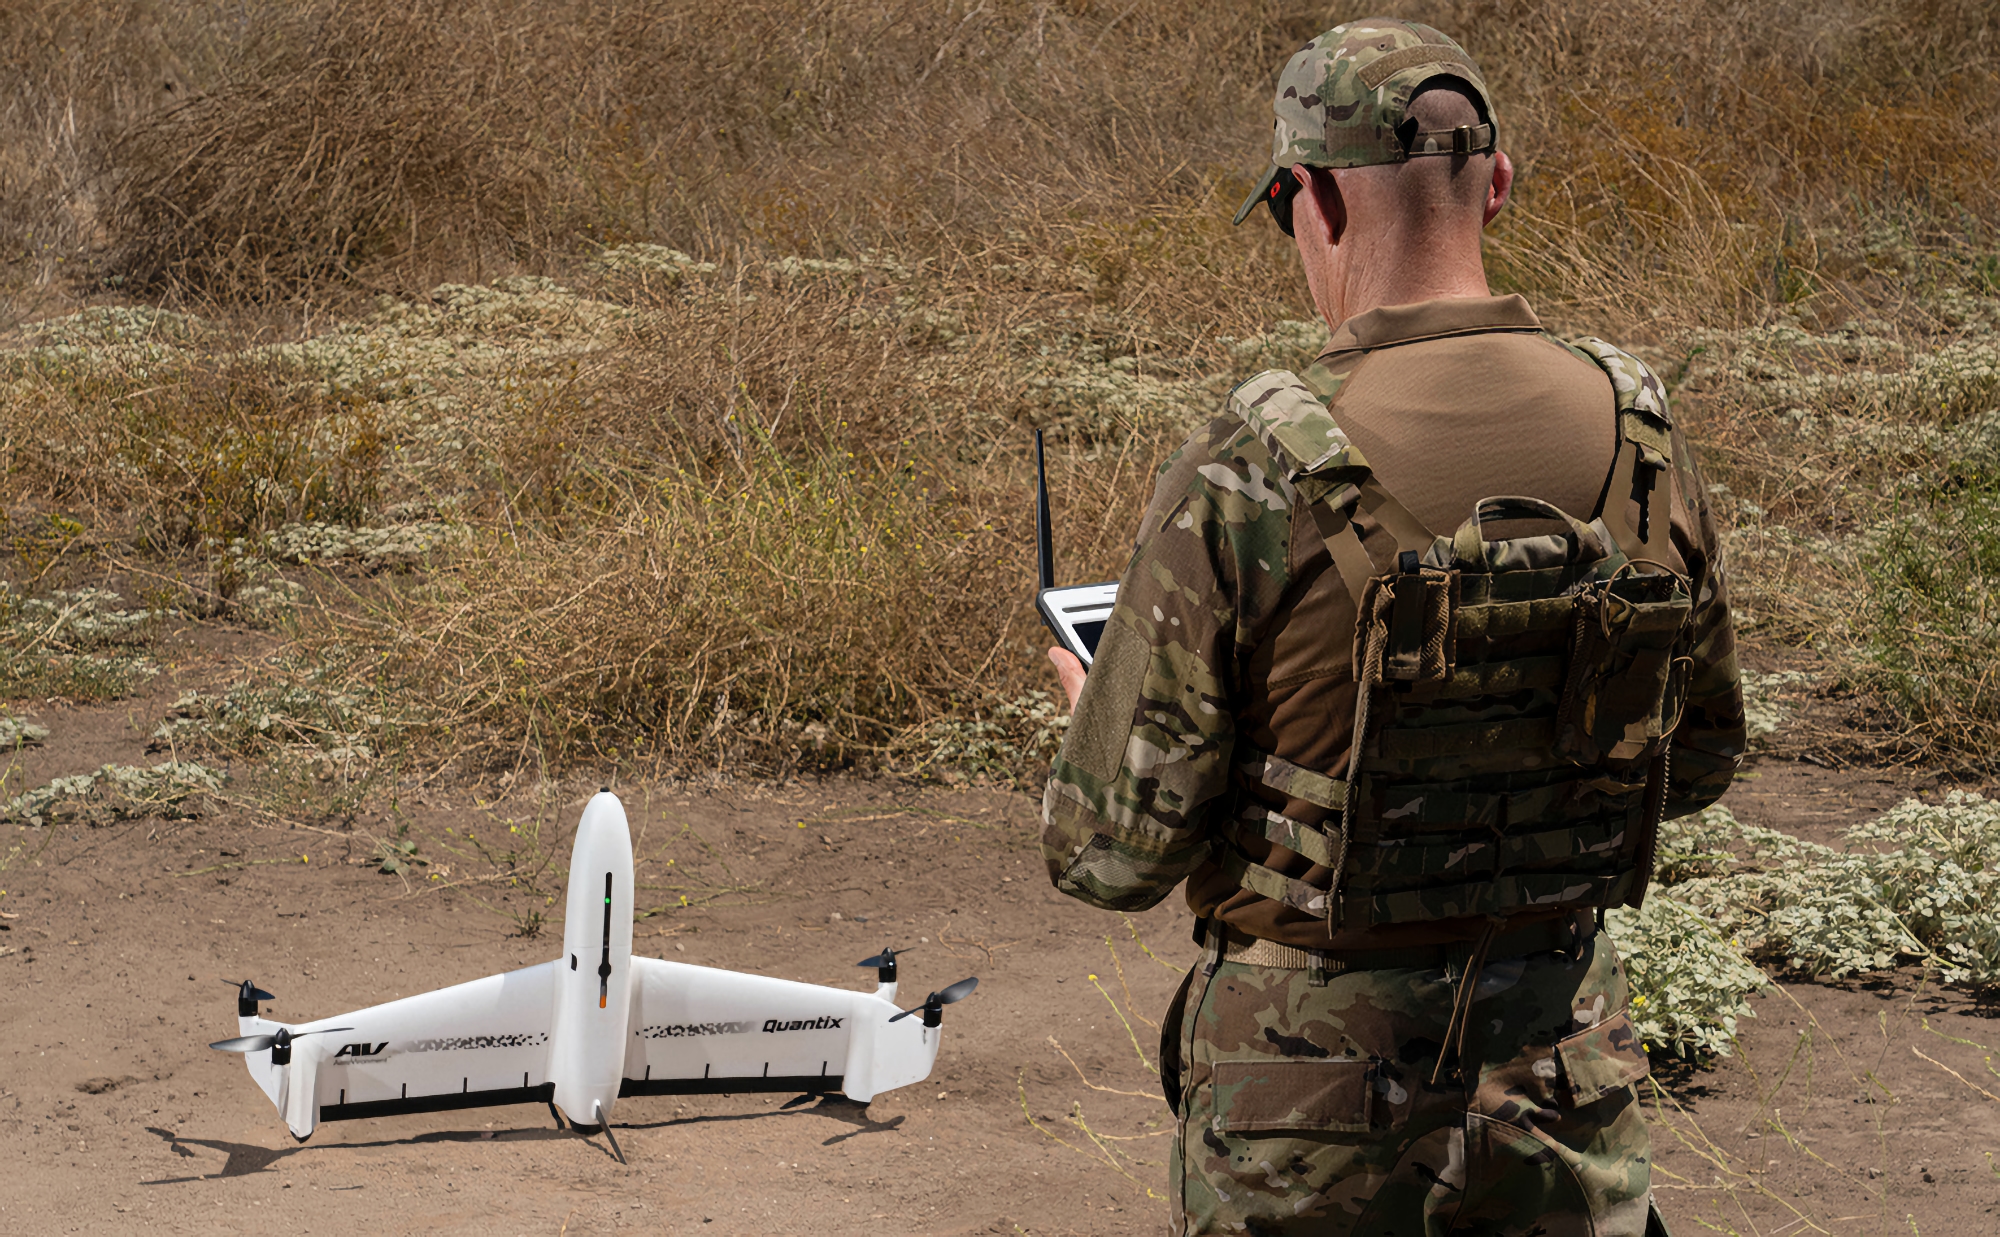 Un rare UAV de reconnaissance Quantix Recon d'Aerovironment a été repéré à l'avant des Forces armées ukrainiennes